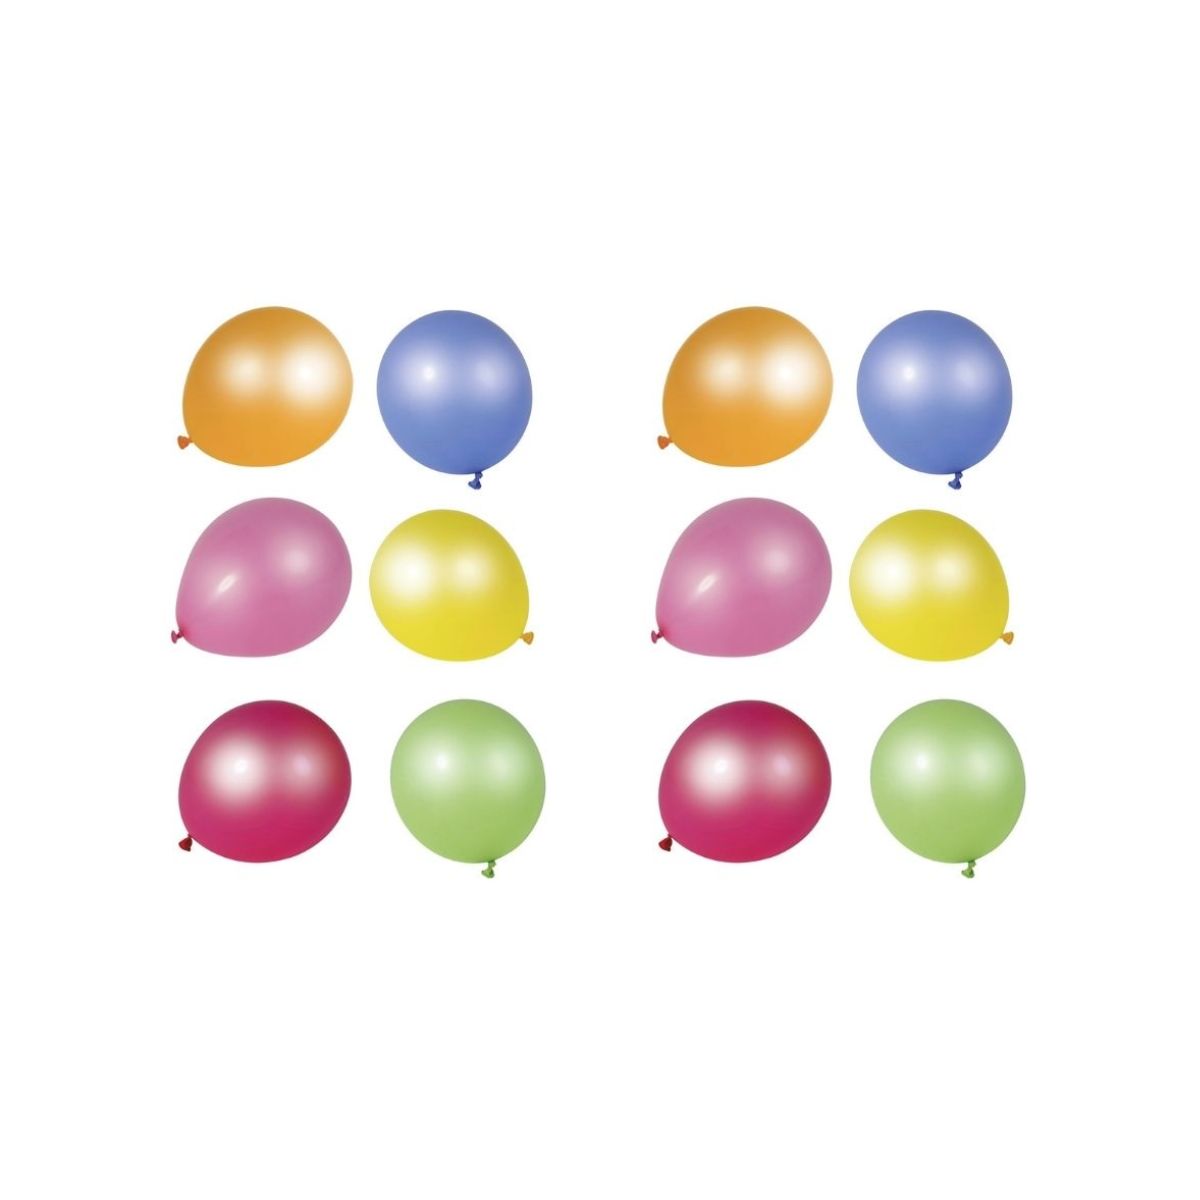 Lot de 10 Ballons de baudruche sérigraphiés 20 ans, Diam. 28 cm , pour déco  anniversaire